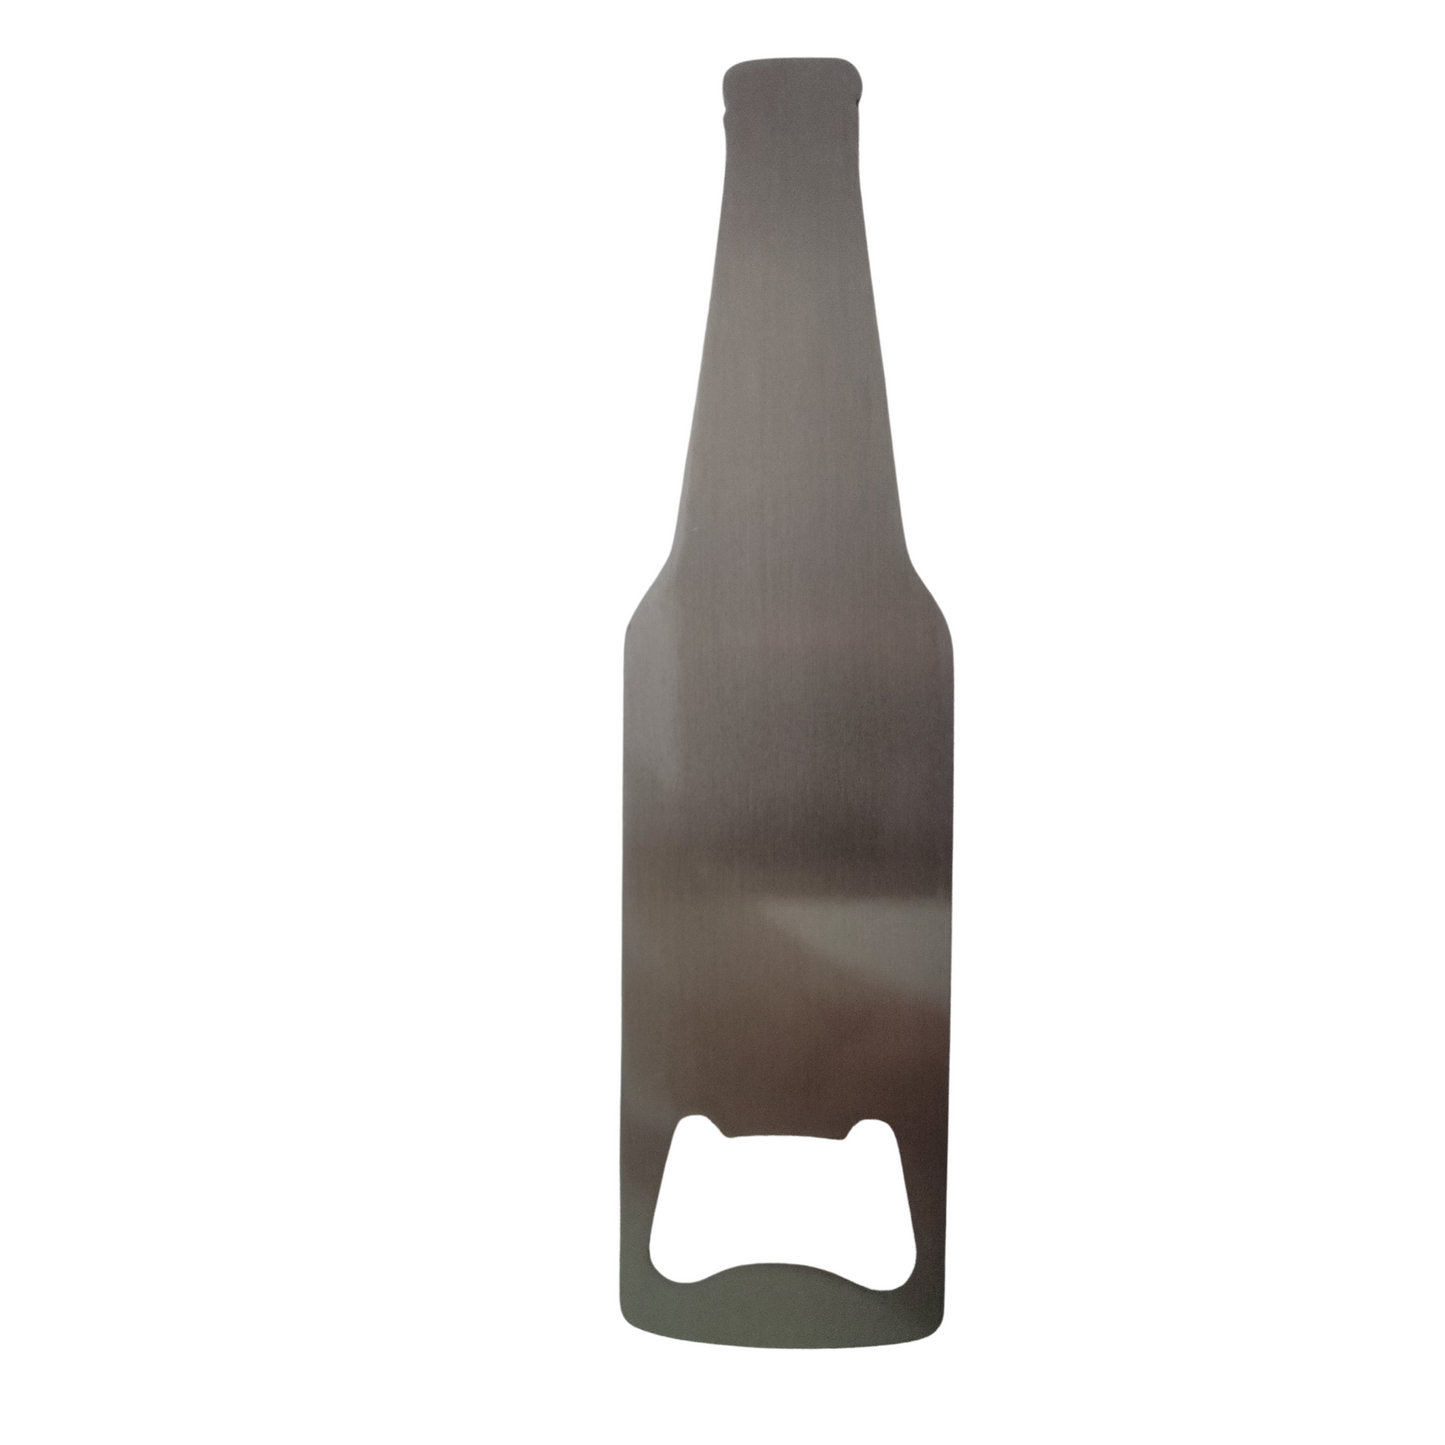 Bottle Shaped Sublimatable Stainless Steel Bottle Opener